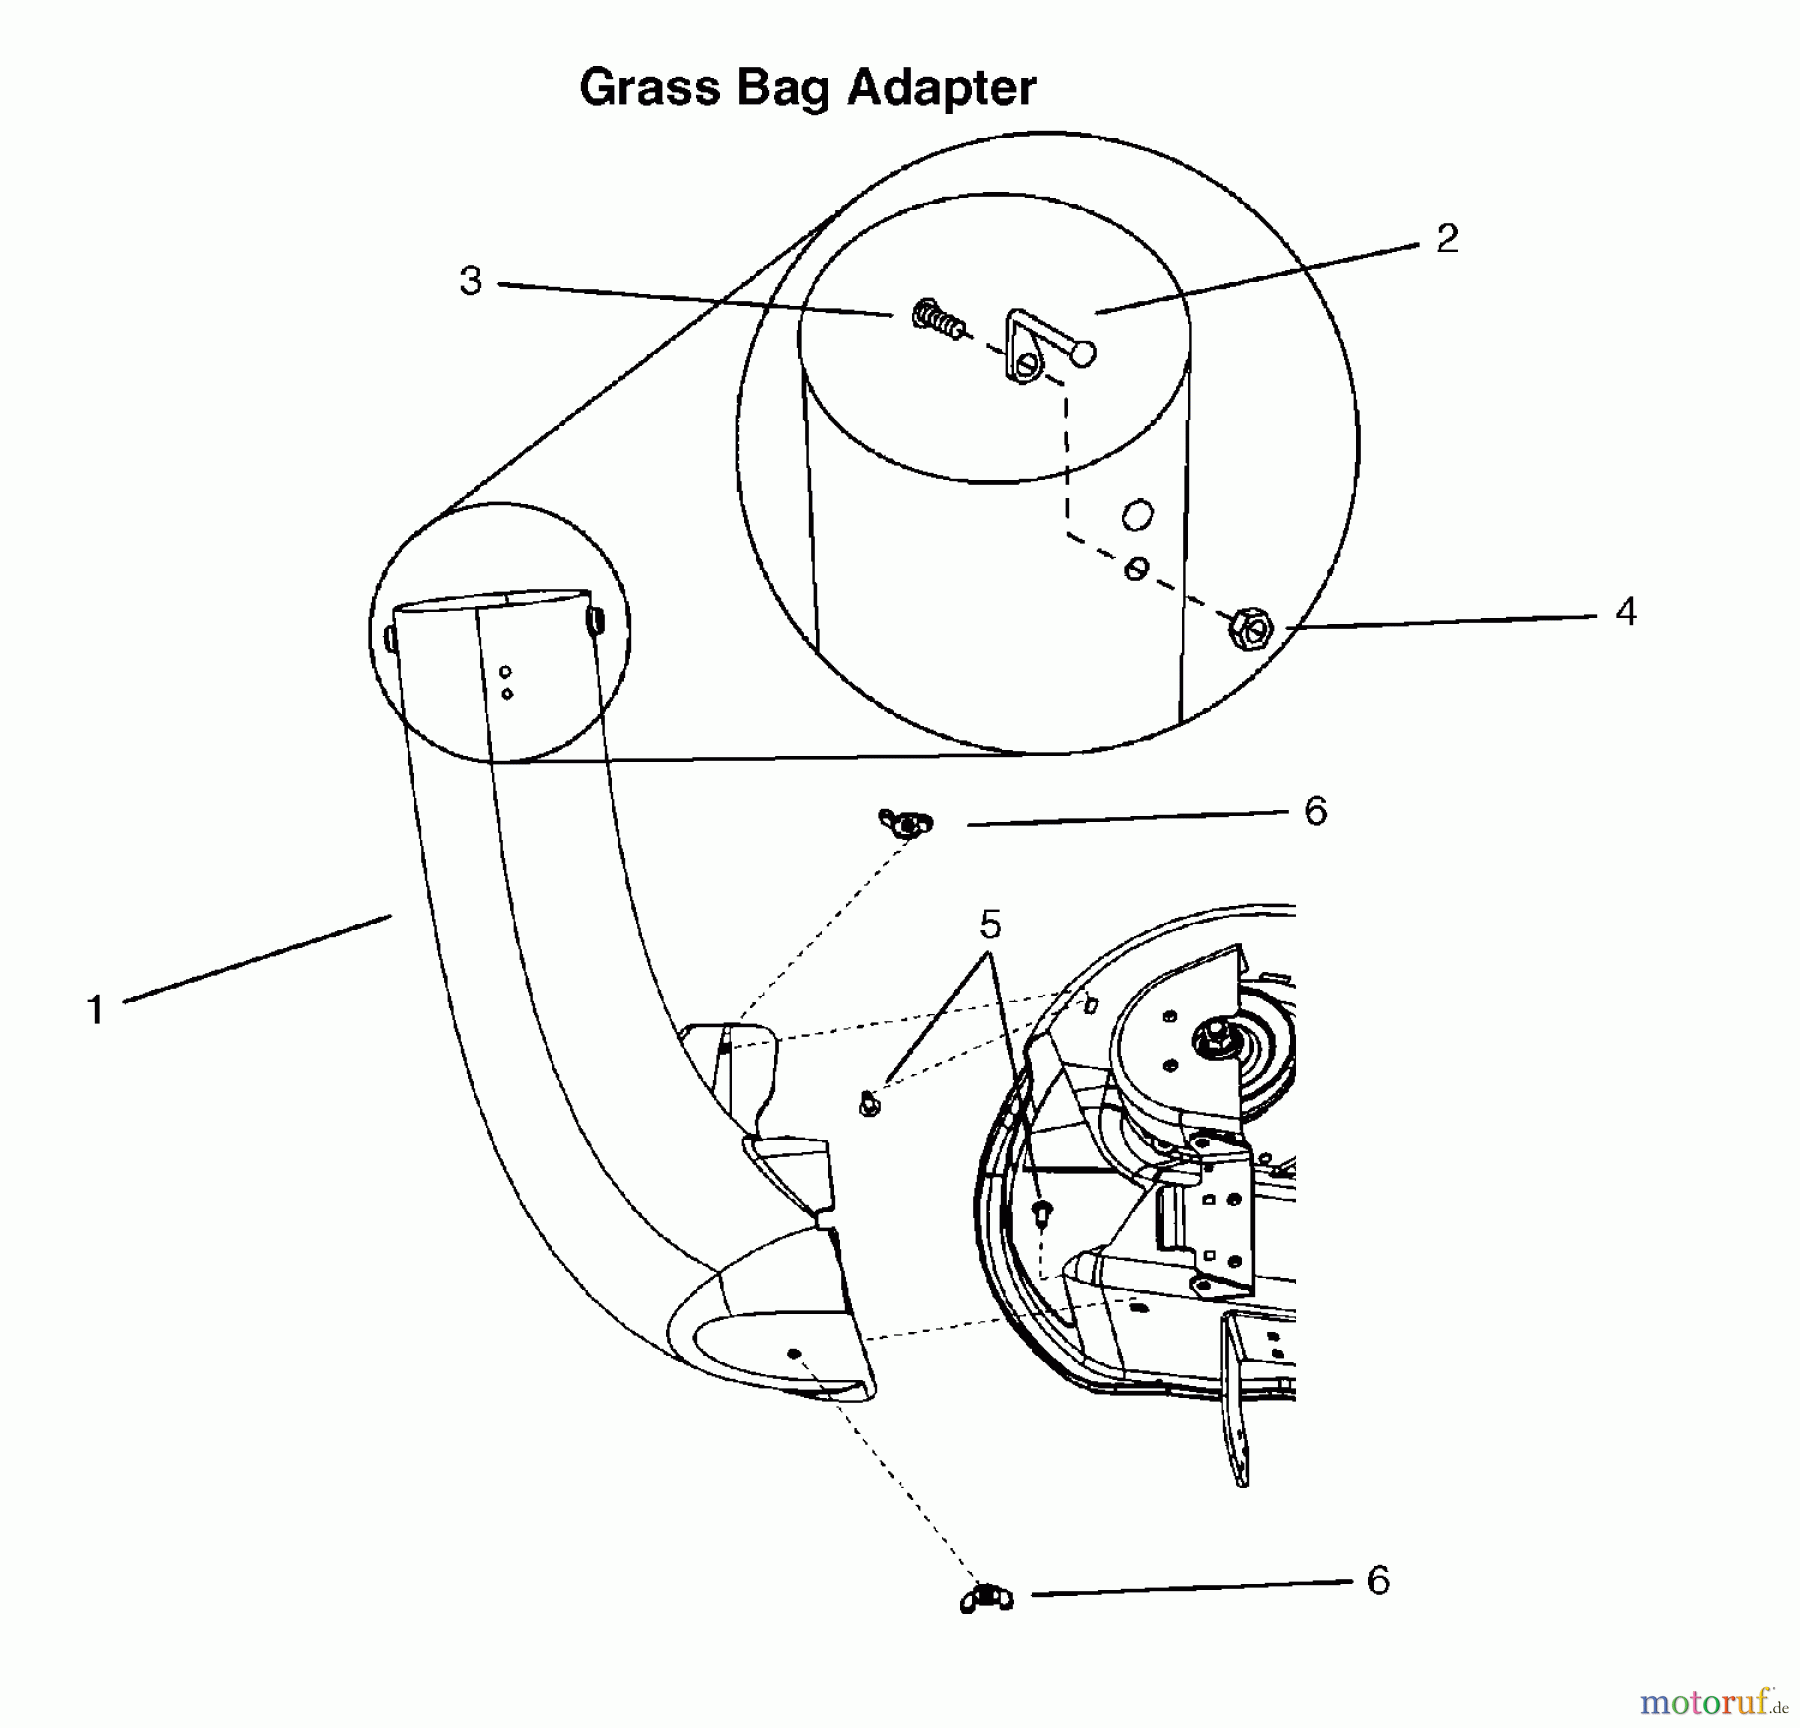  Murray Rasenmäherzubehör 7600069 - Murray Triple Bag Grass Catcher Grass Bag Deck Adapter